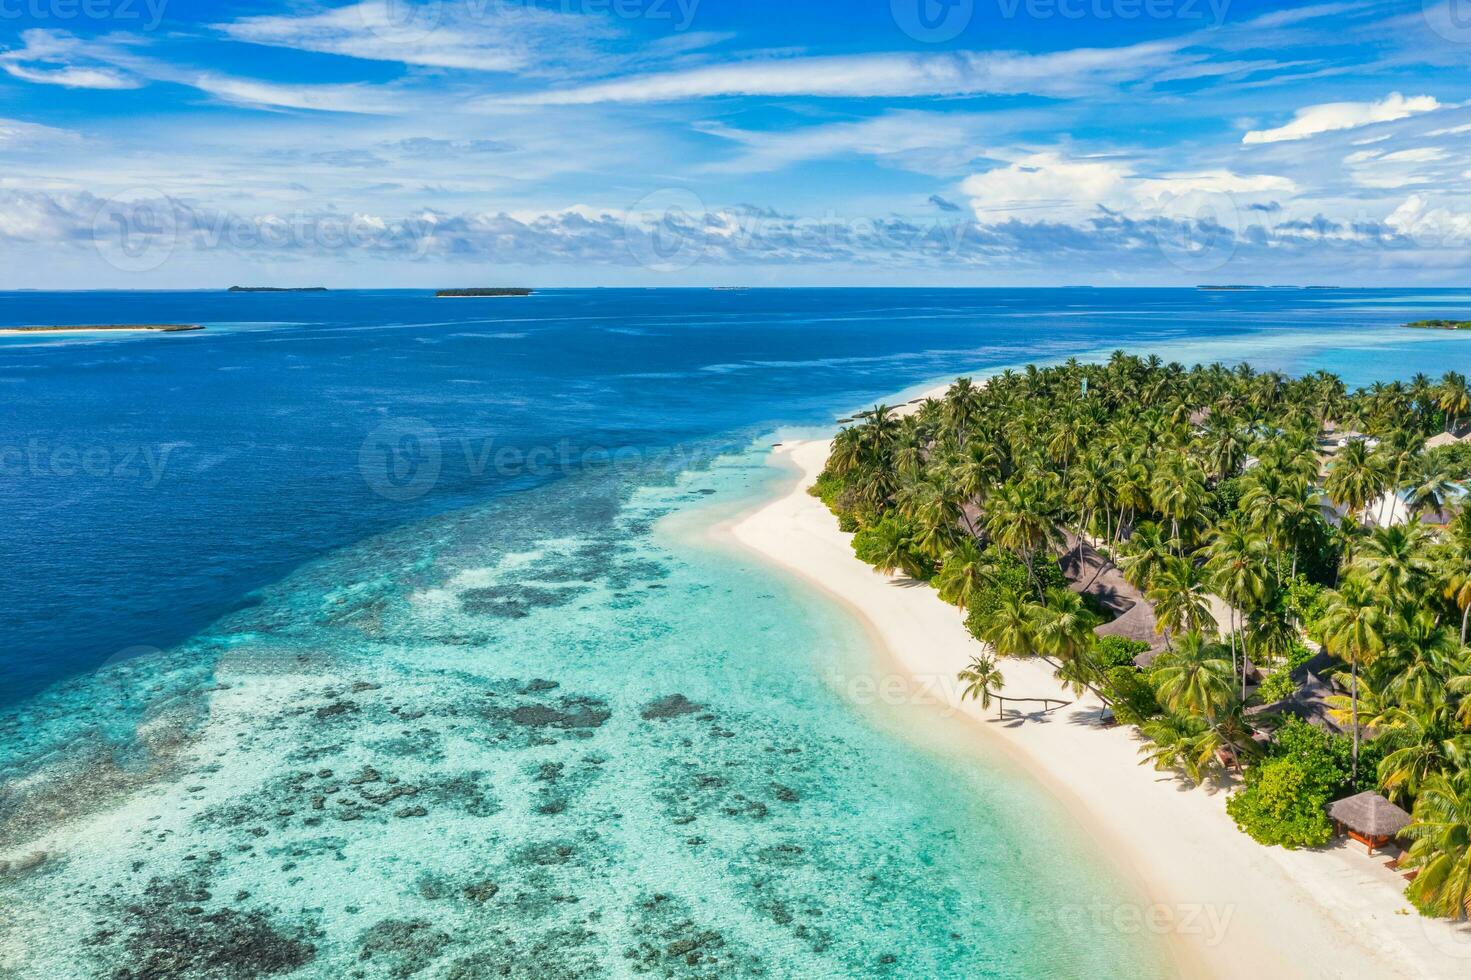 verbazingwekkend eiland strand. Maldiven van antenne visie rustig tropisch landschap kust met palm bomen Aan wit zanderig strand. exotisch natuur oever, luxe toevlucht eiland. mooi zomer vakantie toerisme foto